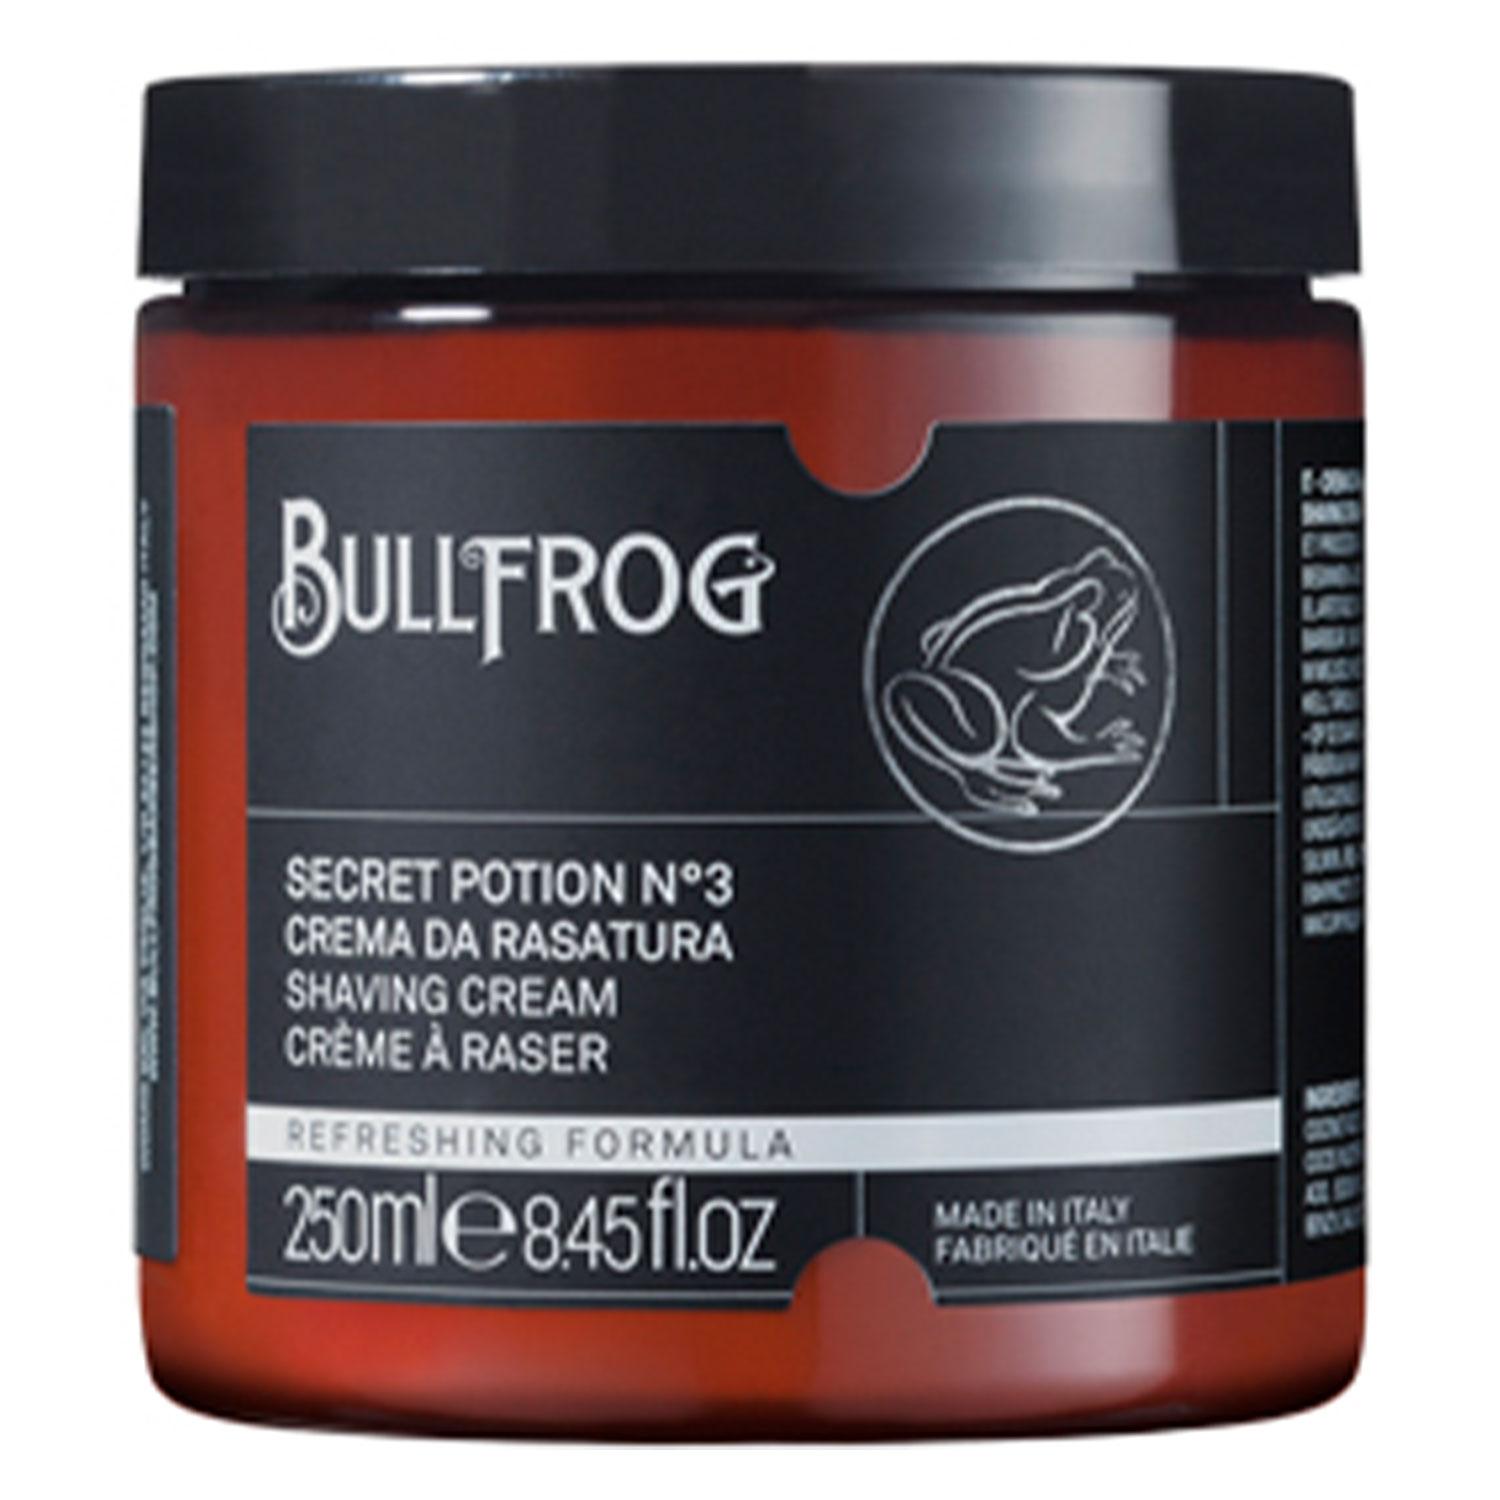 BULLFROG - Shaving Cream Secret Potion N°3